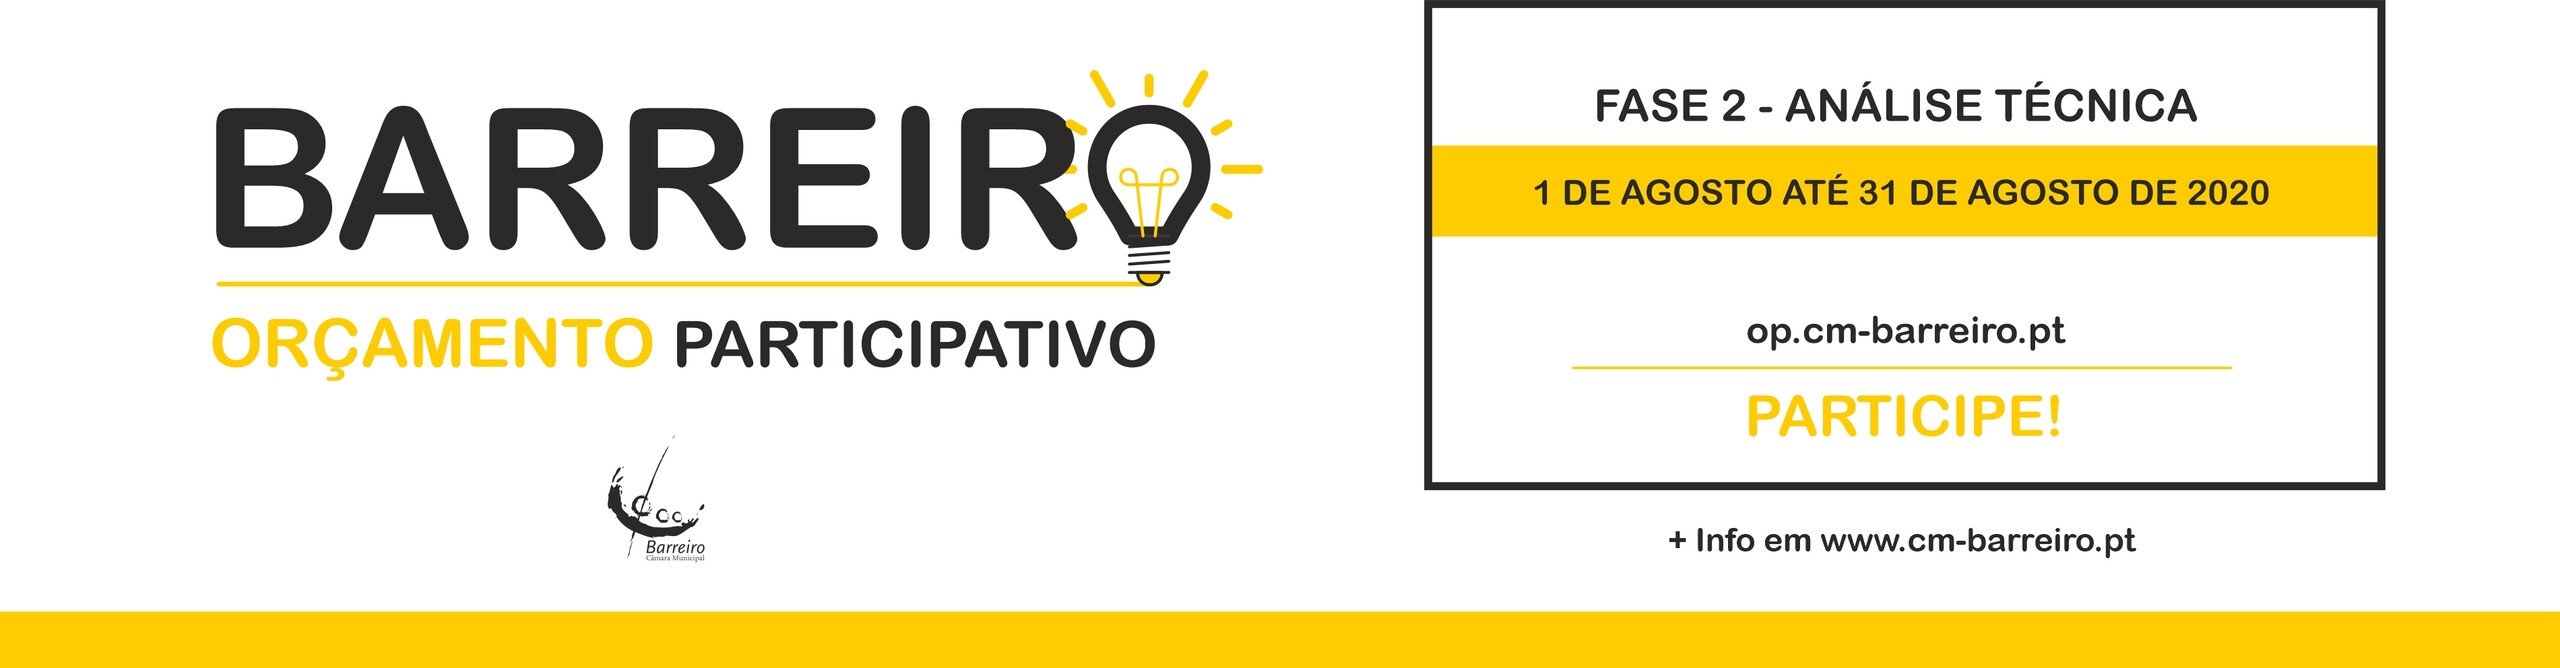 Novo Ciclo para o Orçamento Participativo publicado em Diário da República | Análise Técnica de 1 a 31 de agosto de 2020